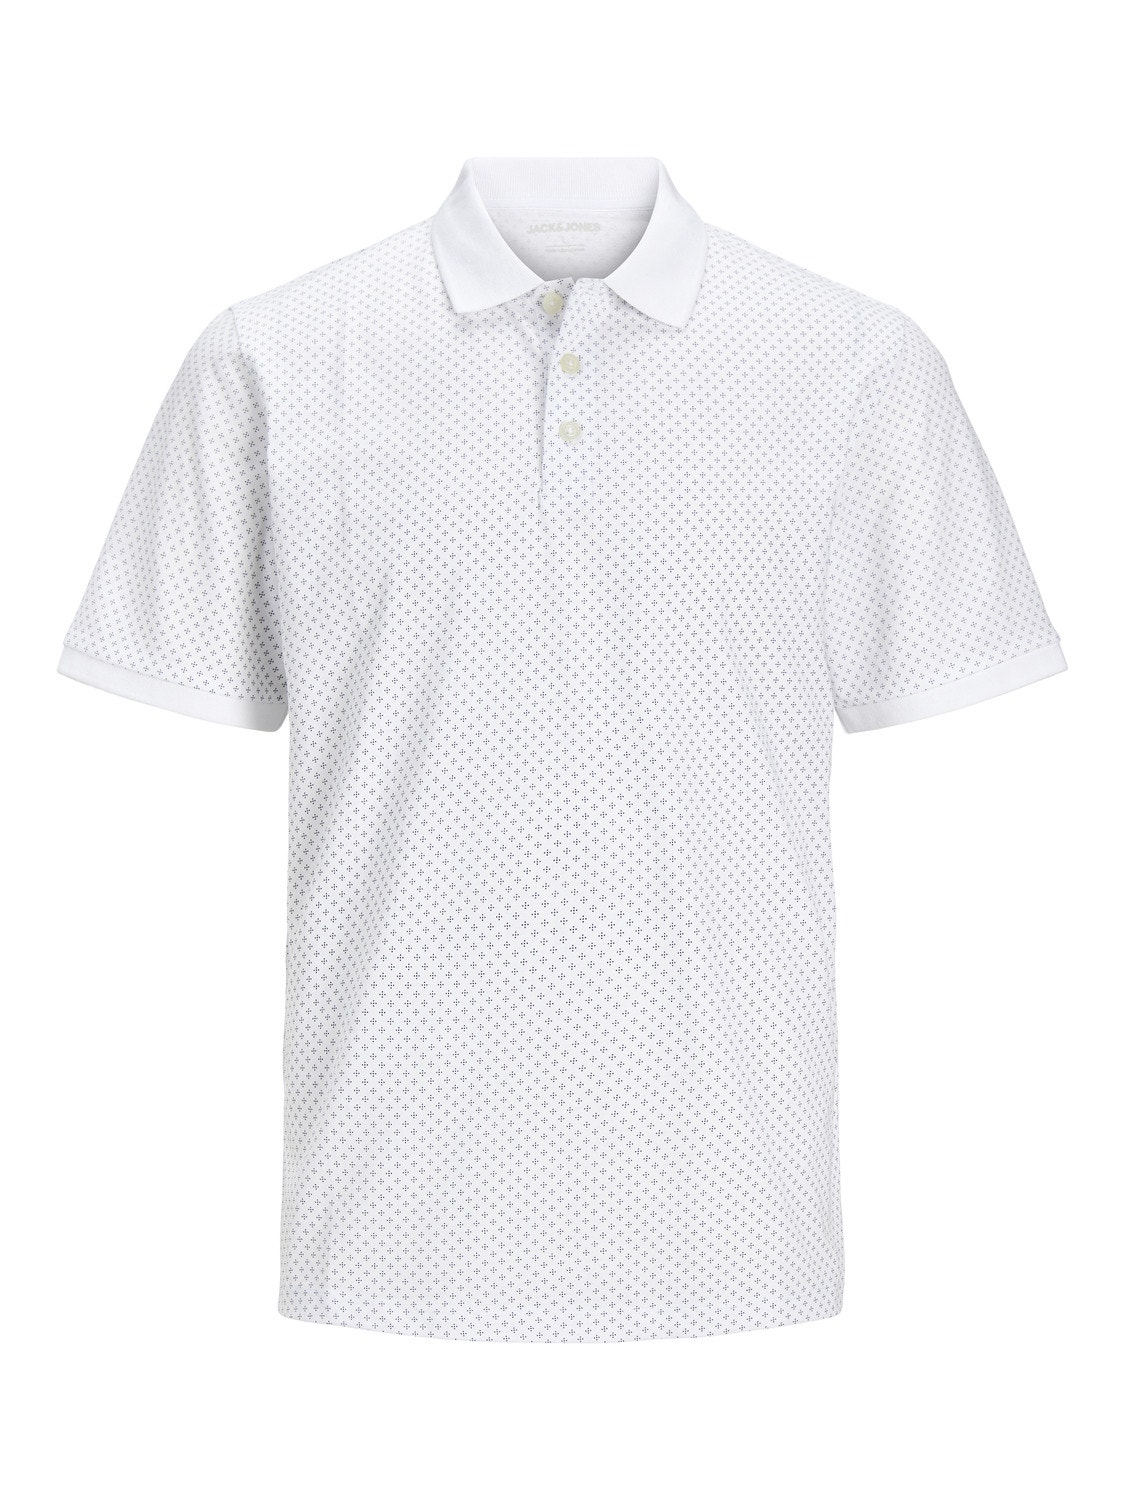 Jack & Jones Plus Size Camiseta polo Estampado -White - 12254901